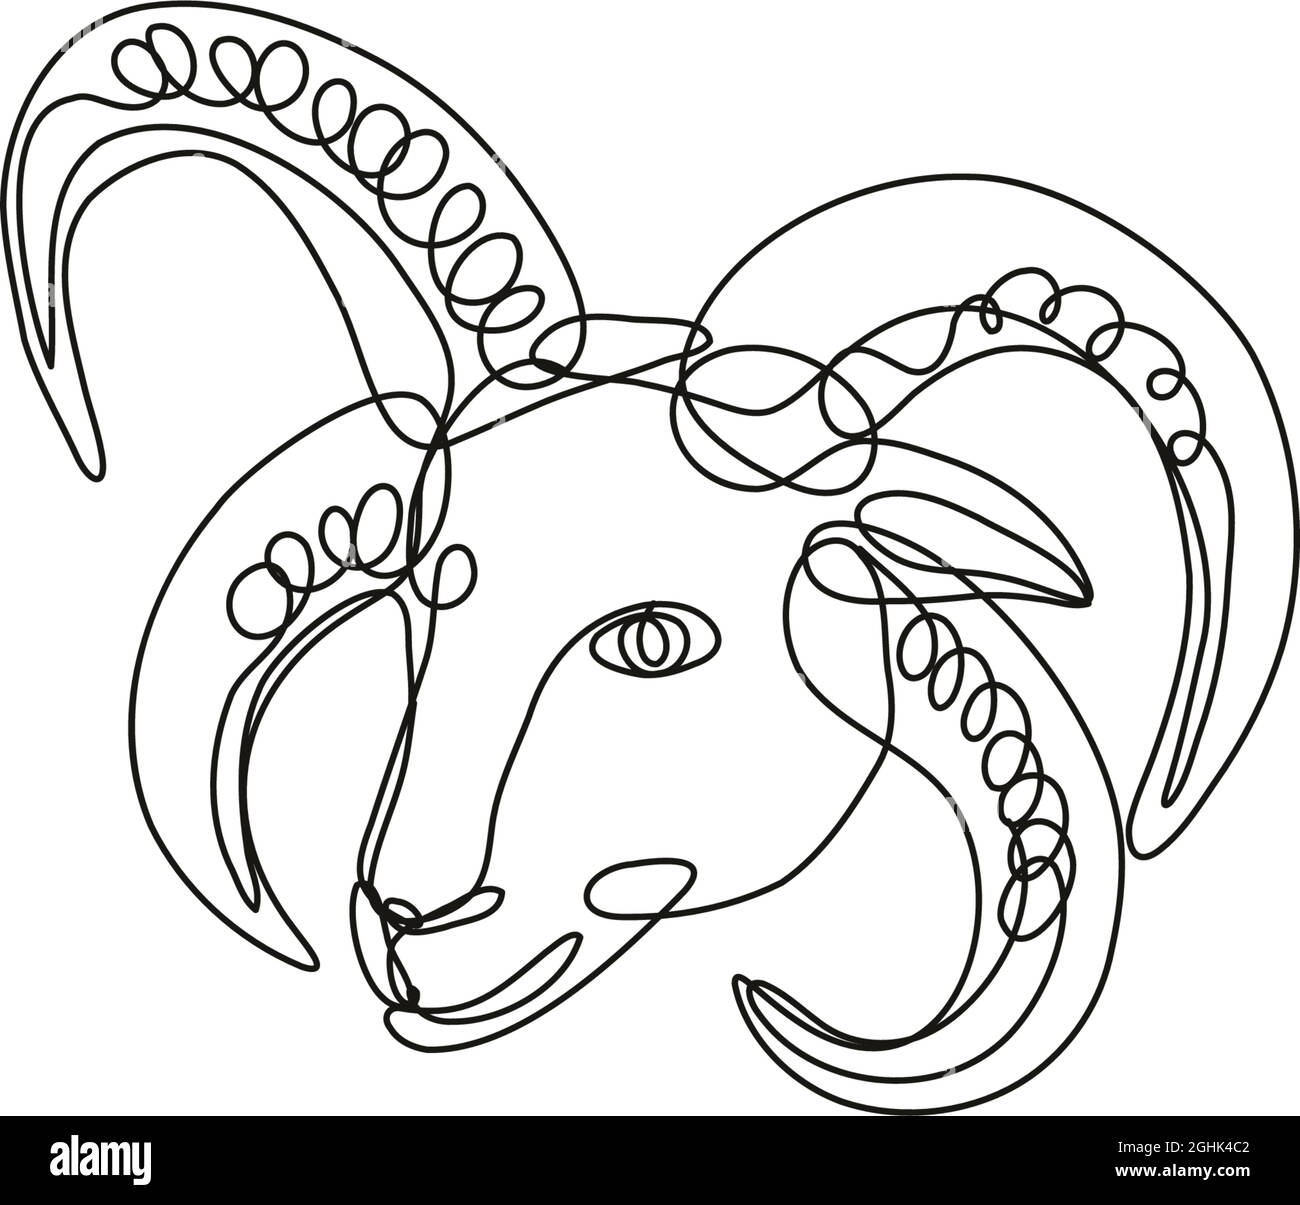 Dessin en ligne continue illustration d'une tête de mouton Manx Loaghtan fait en ligne mono ou en style doodle en noir et blanc sur fond isolé. Illustration de Vecteur